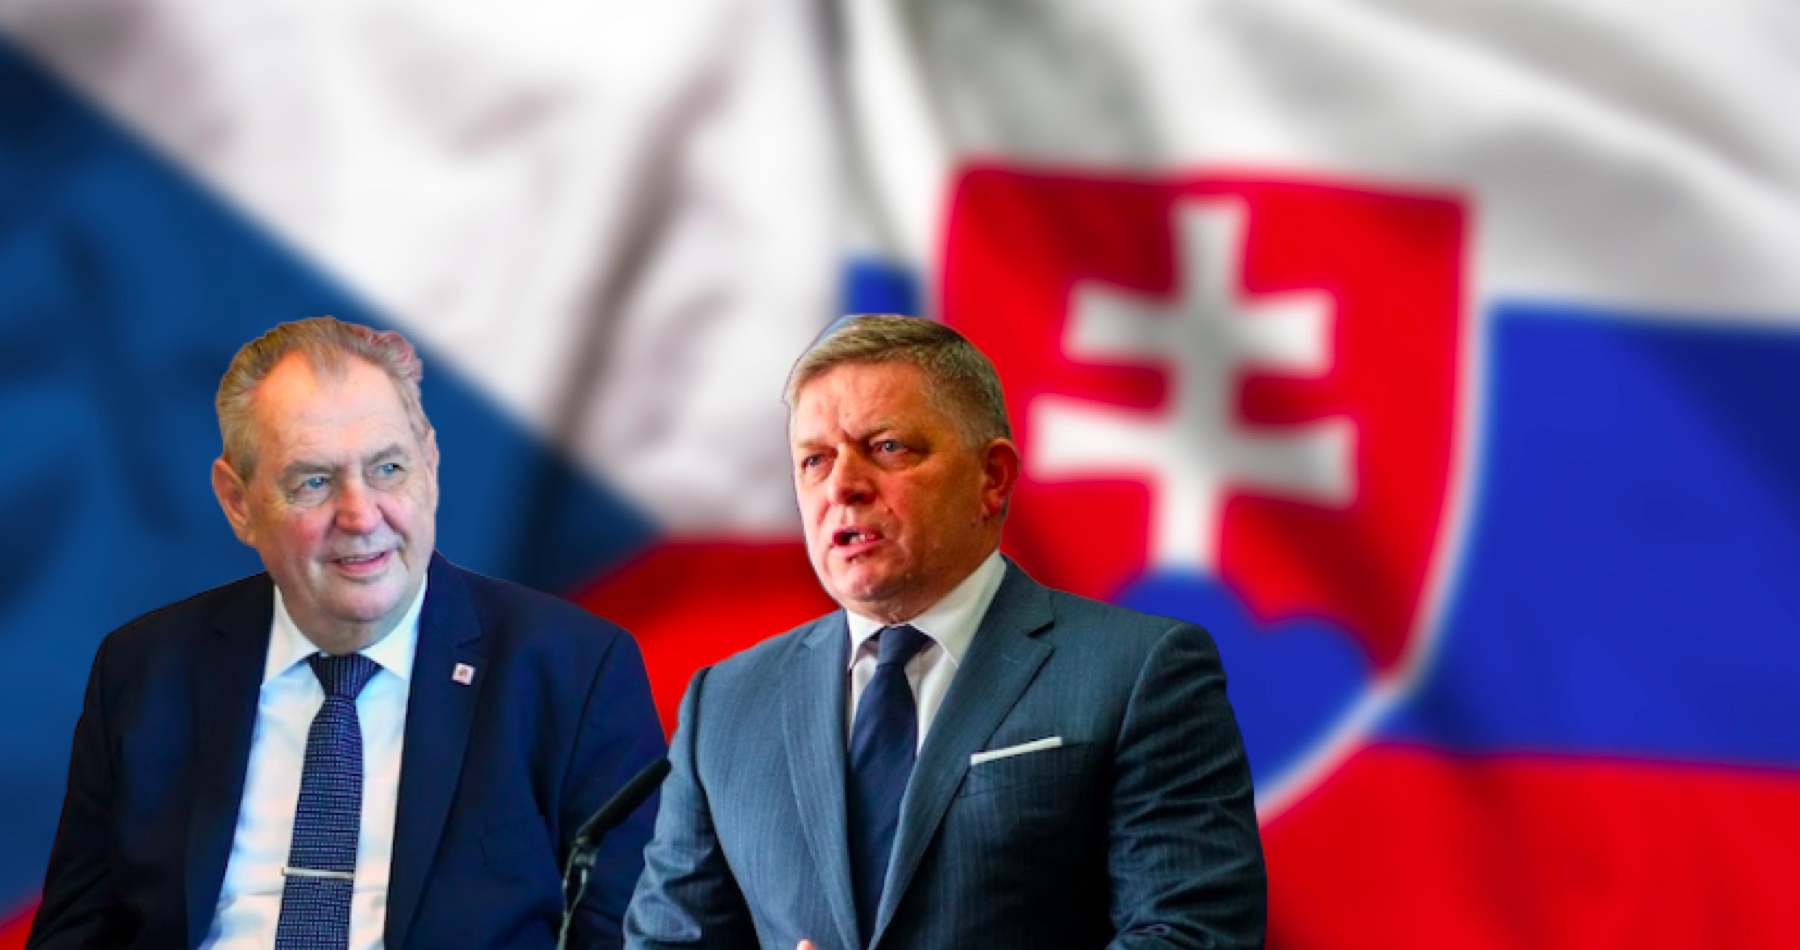 VIDEO: Exprezident Zeman a premiér Fico o zahraničnej politike a aktuálnych vzťahoch Česka a Slovenska, o atmosfére vo V4, o EÚ ovládanej Green Deal náboženstvom